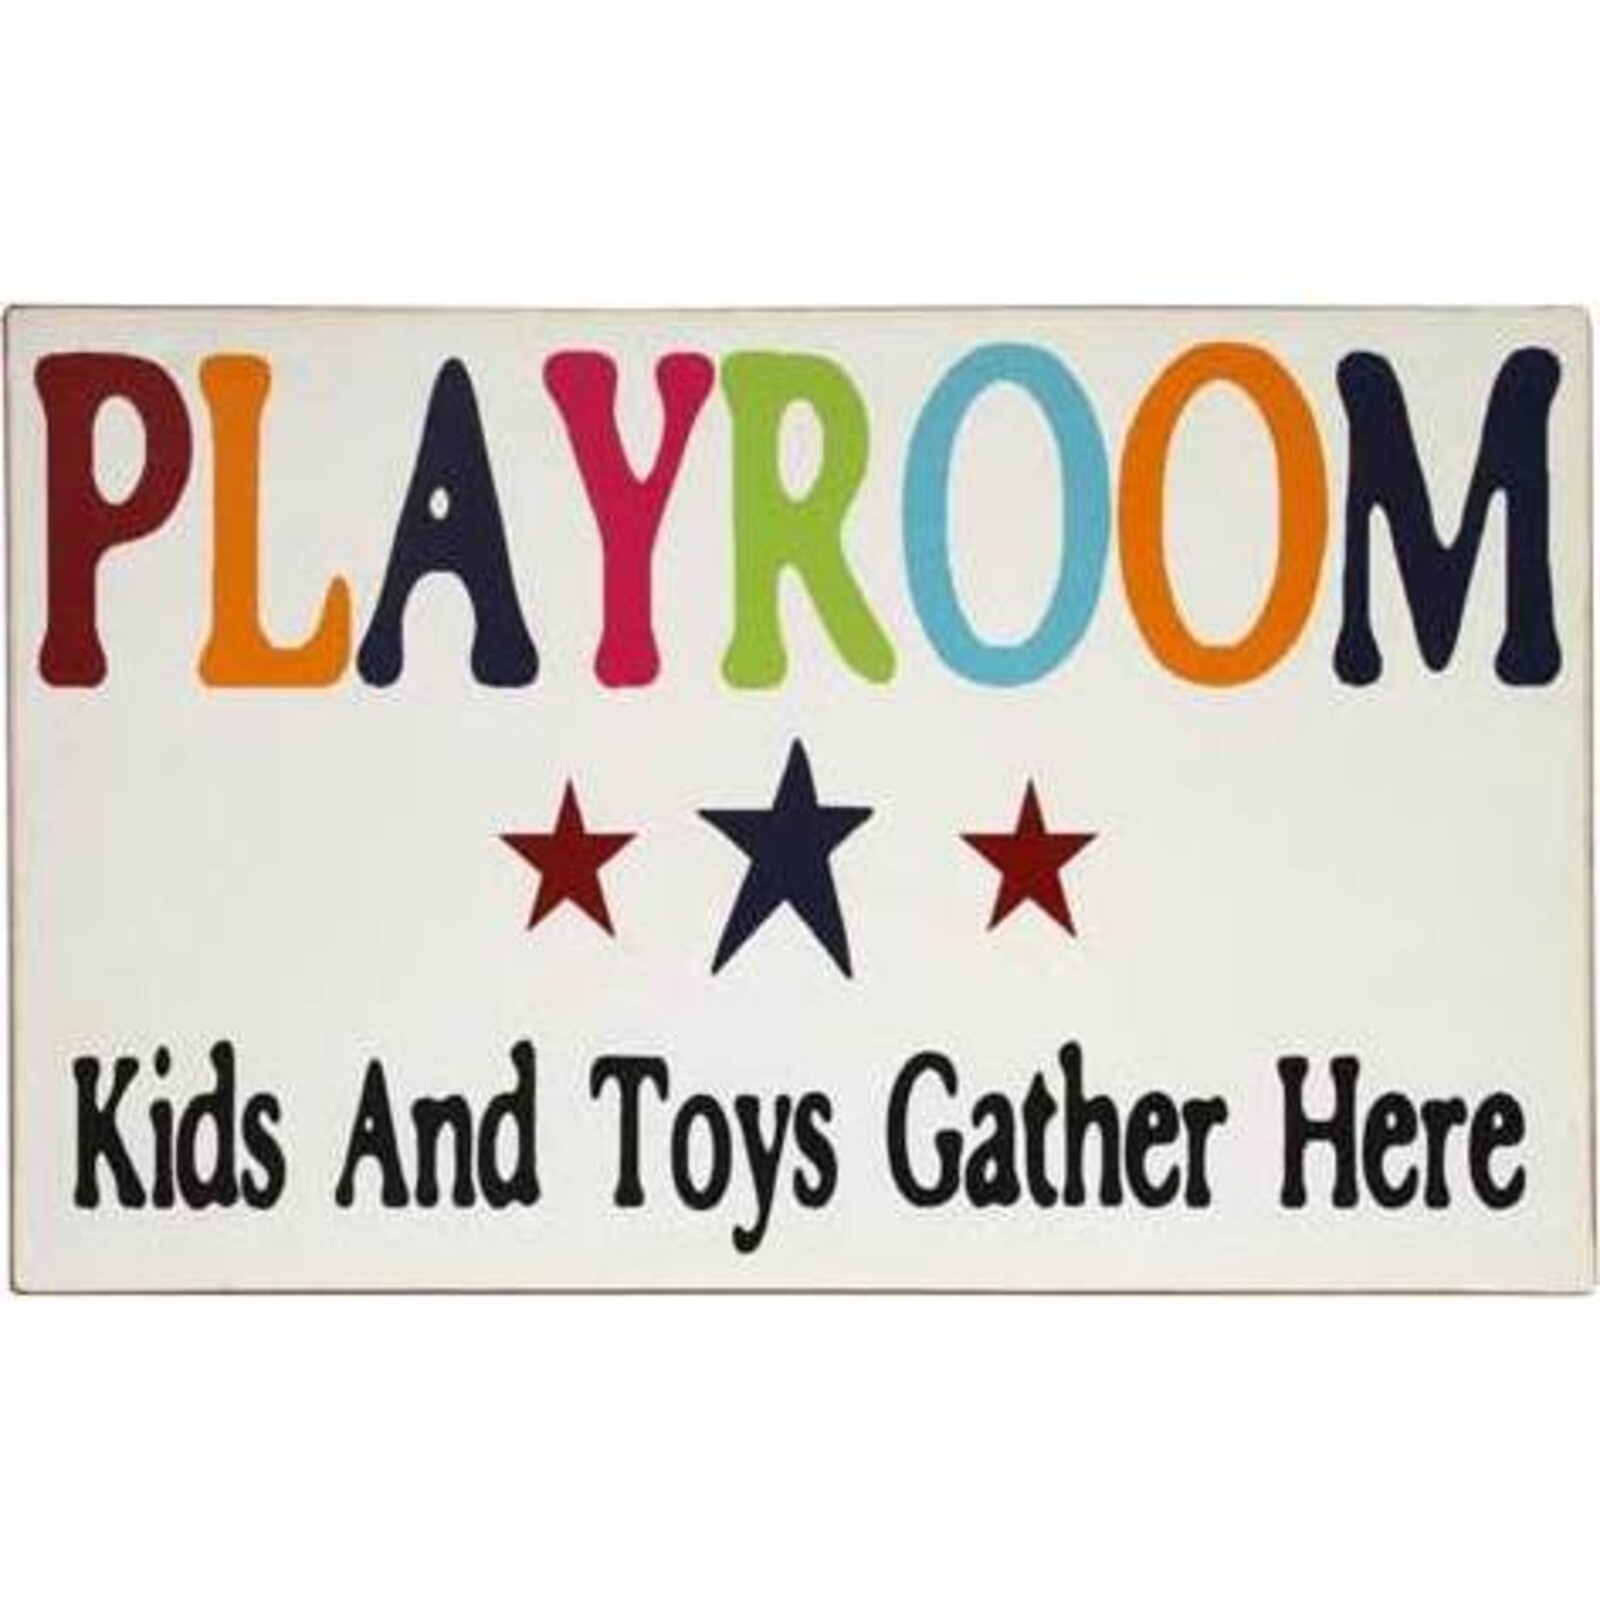 Sign Playroom